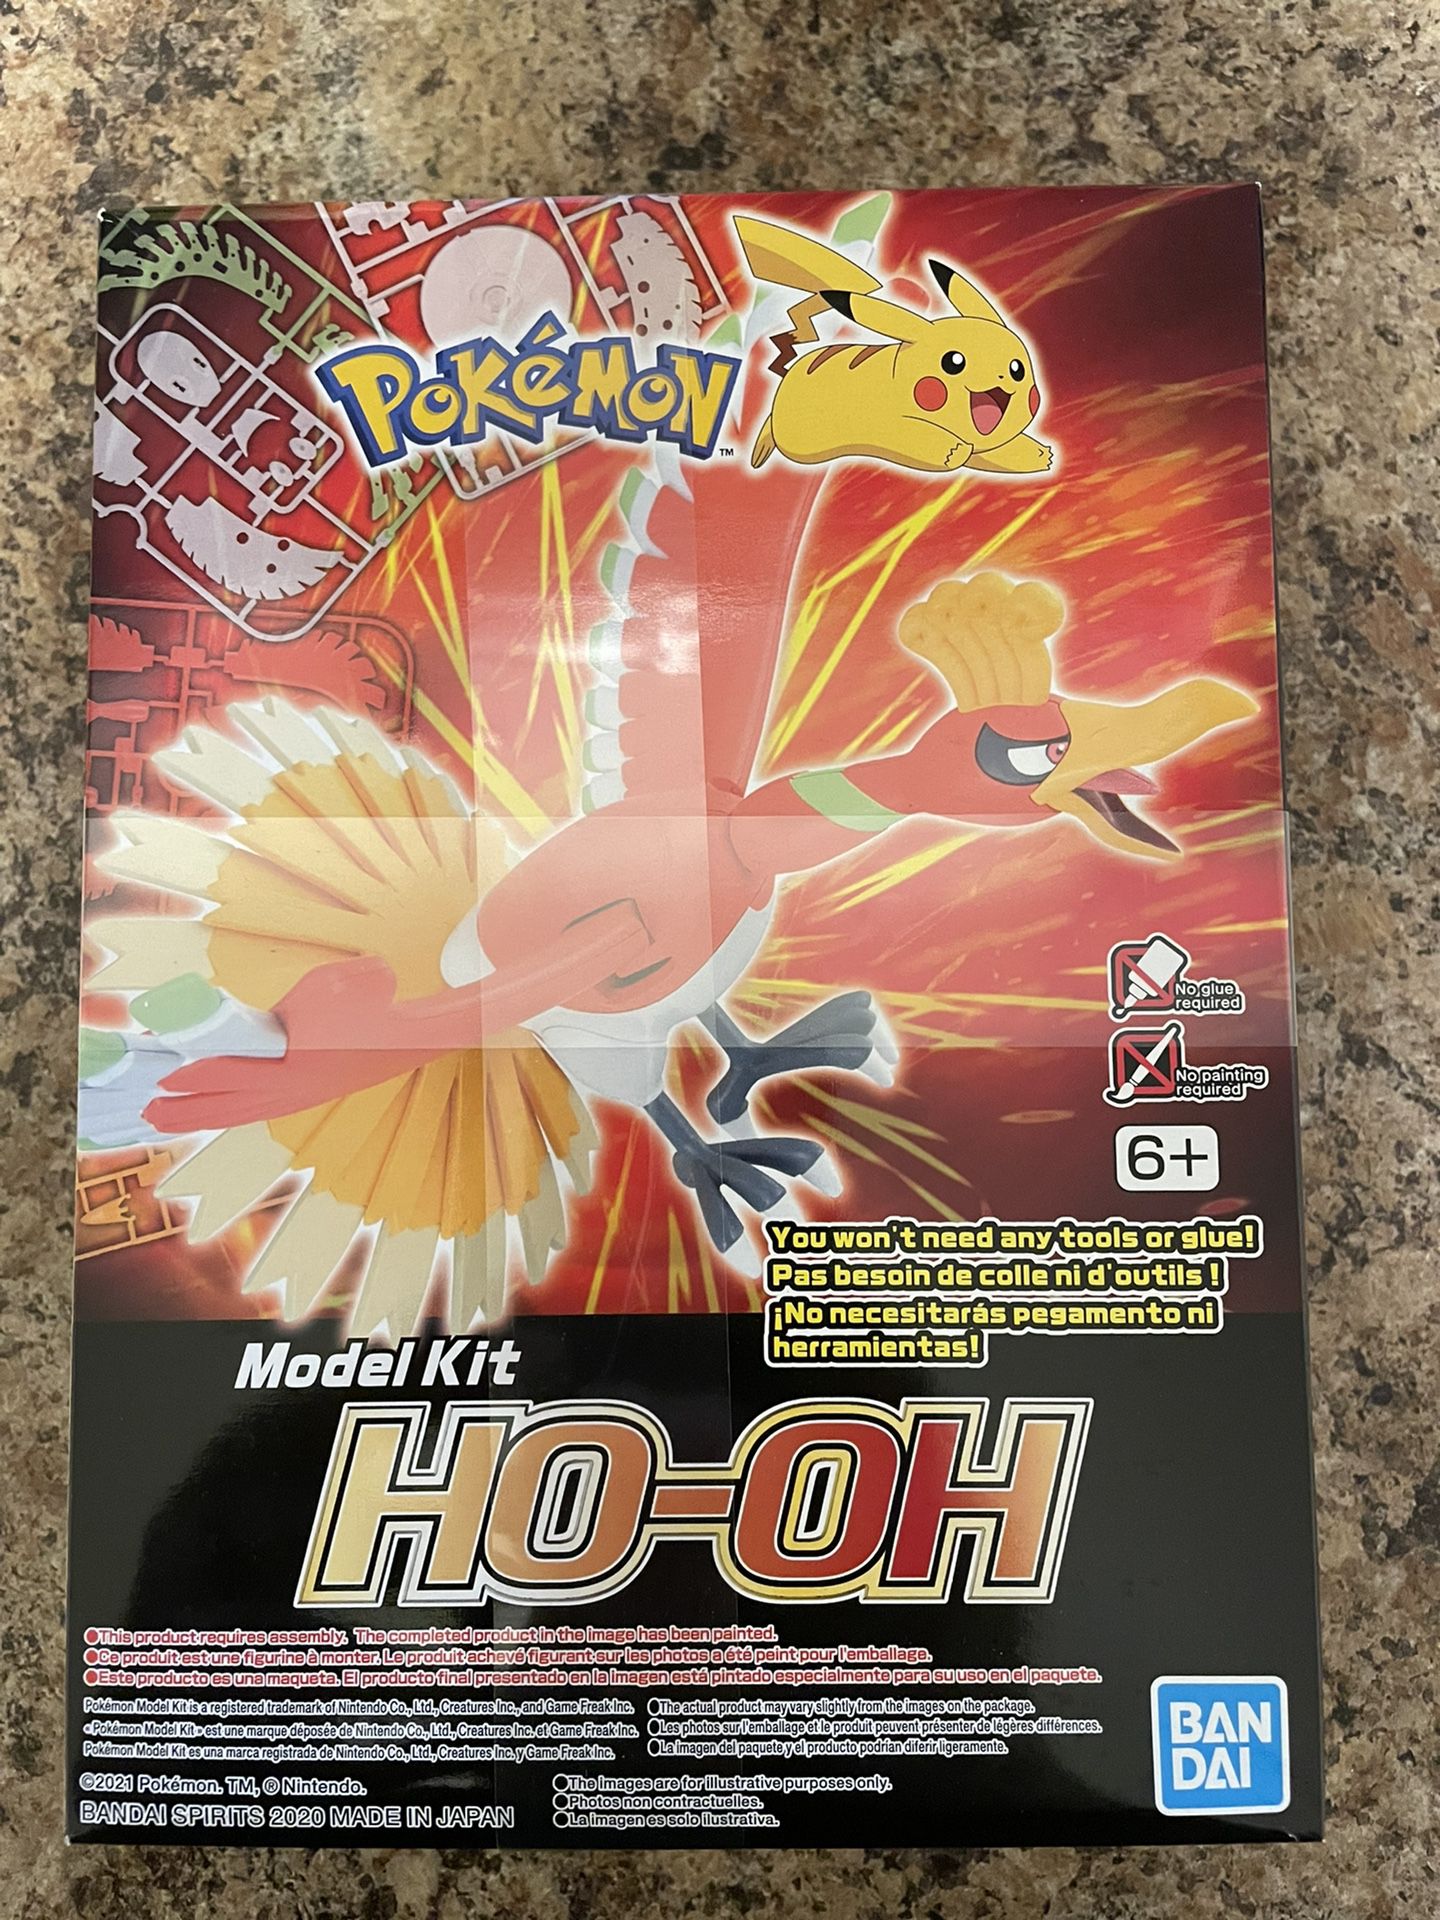 Pokemon Model Kit: Ho-oh